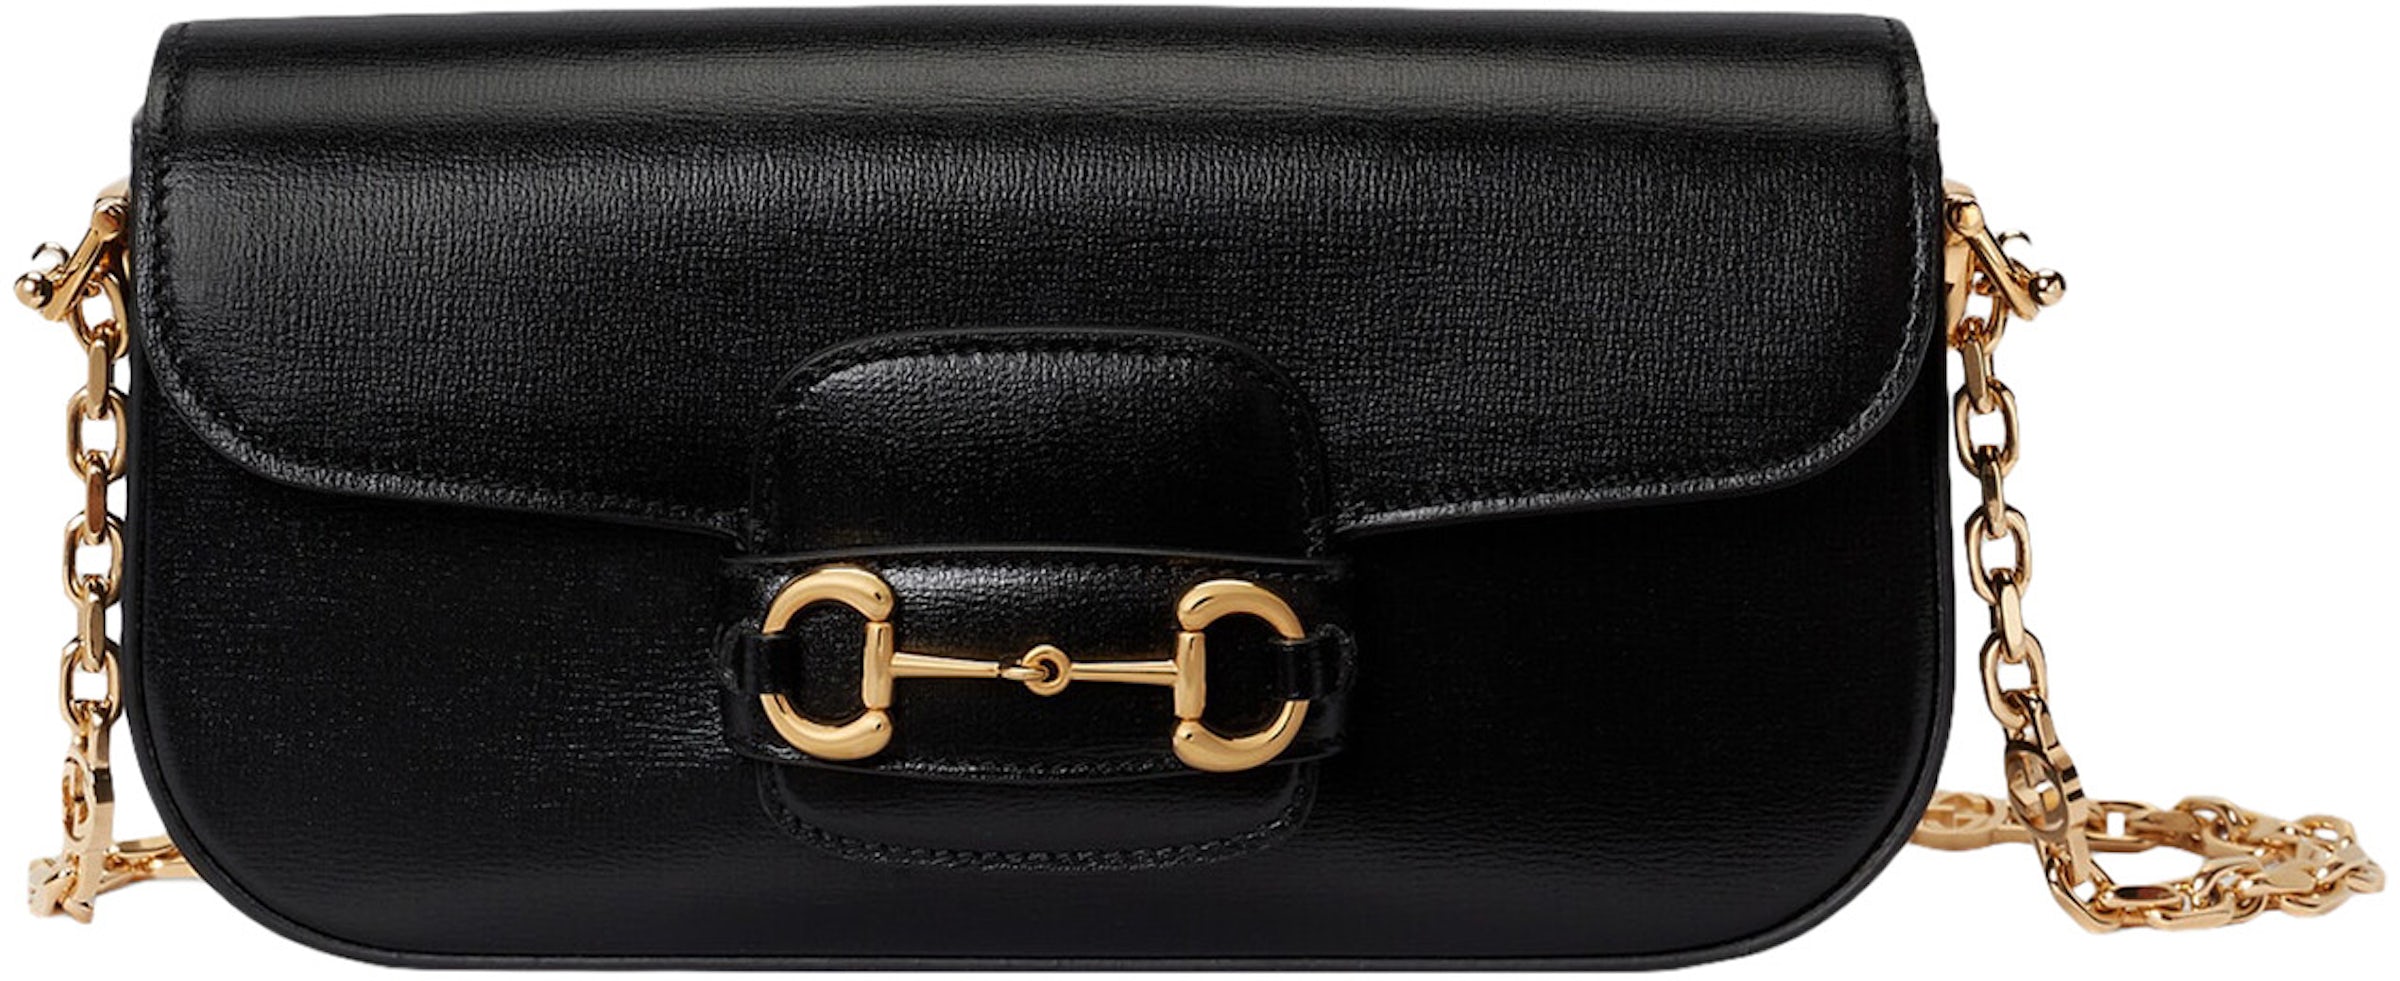 Gucci Gucci Horsebit 1955 Small Shoulder Bag Black